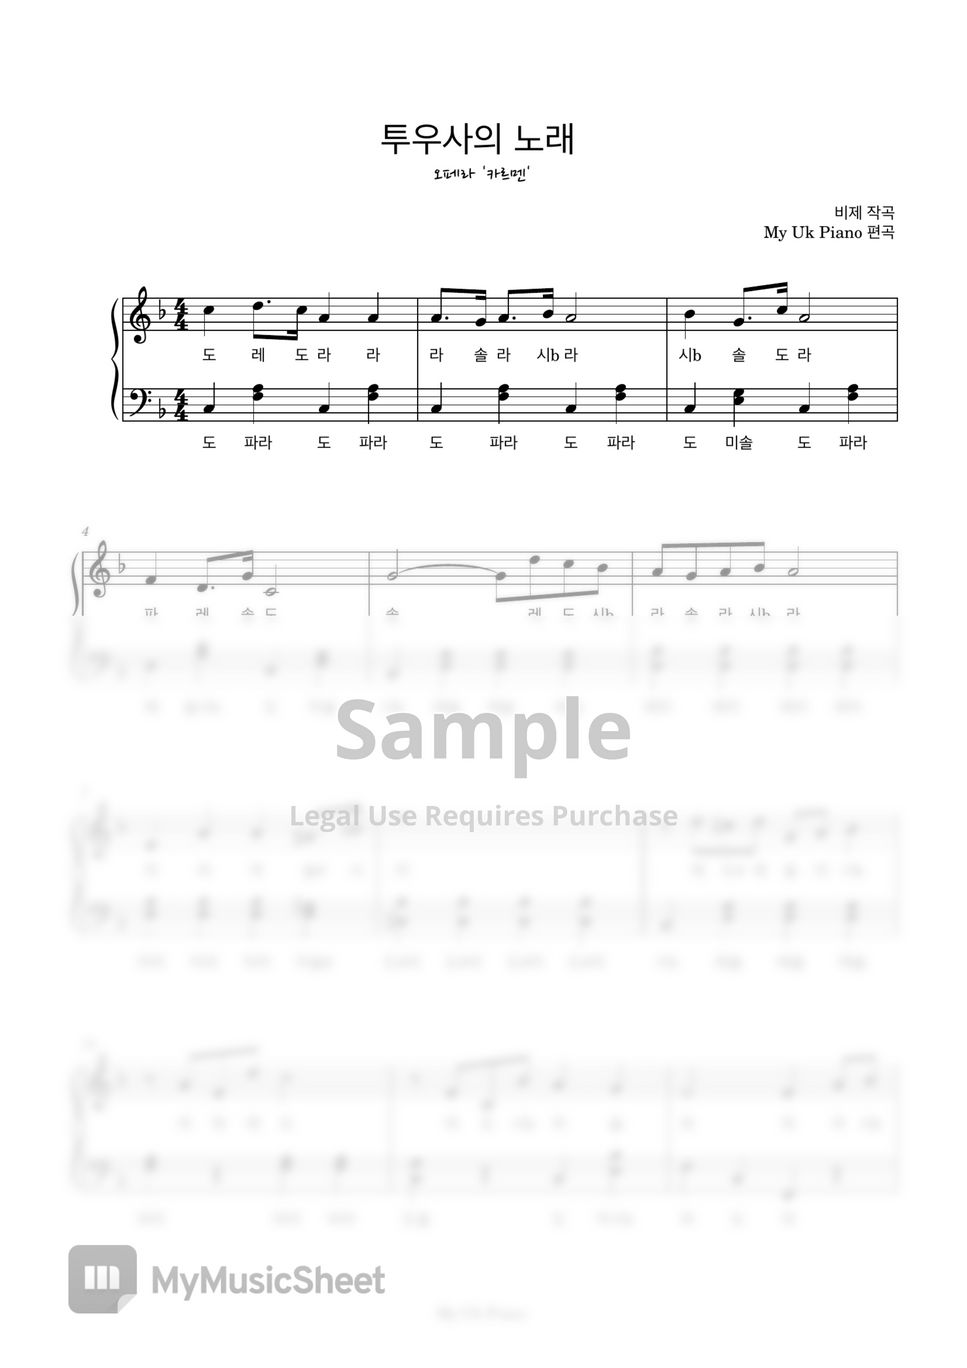 비제 - 투우사의 노래 - 오페라 카르멘 (쉬운계이름악보) by My Uk Piano